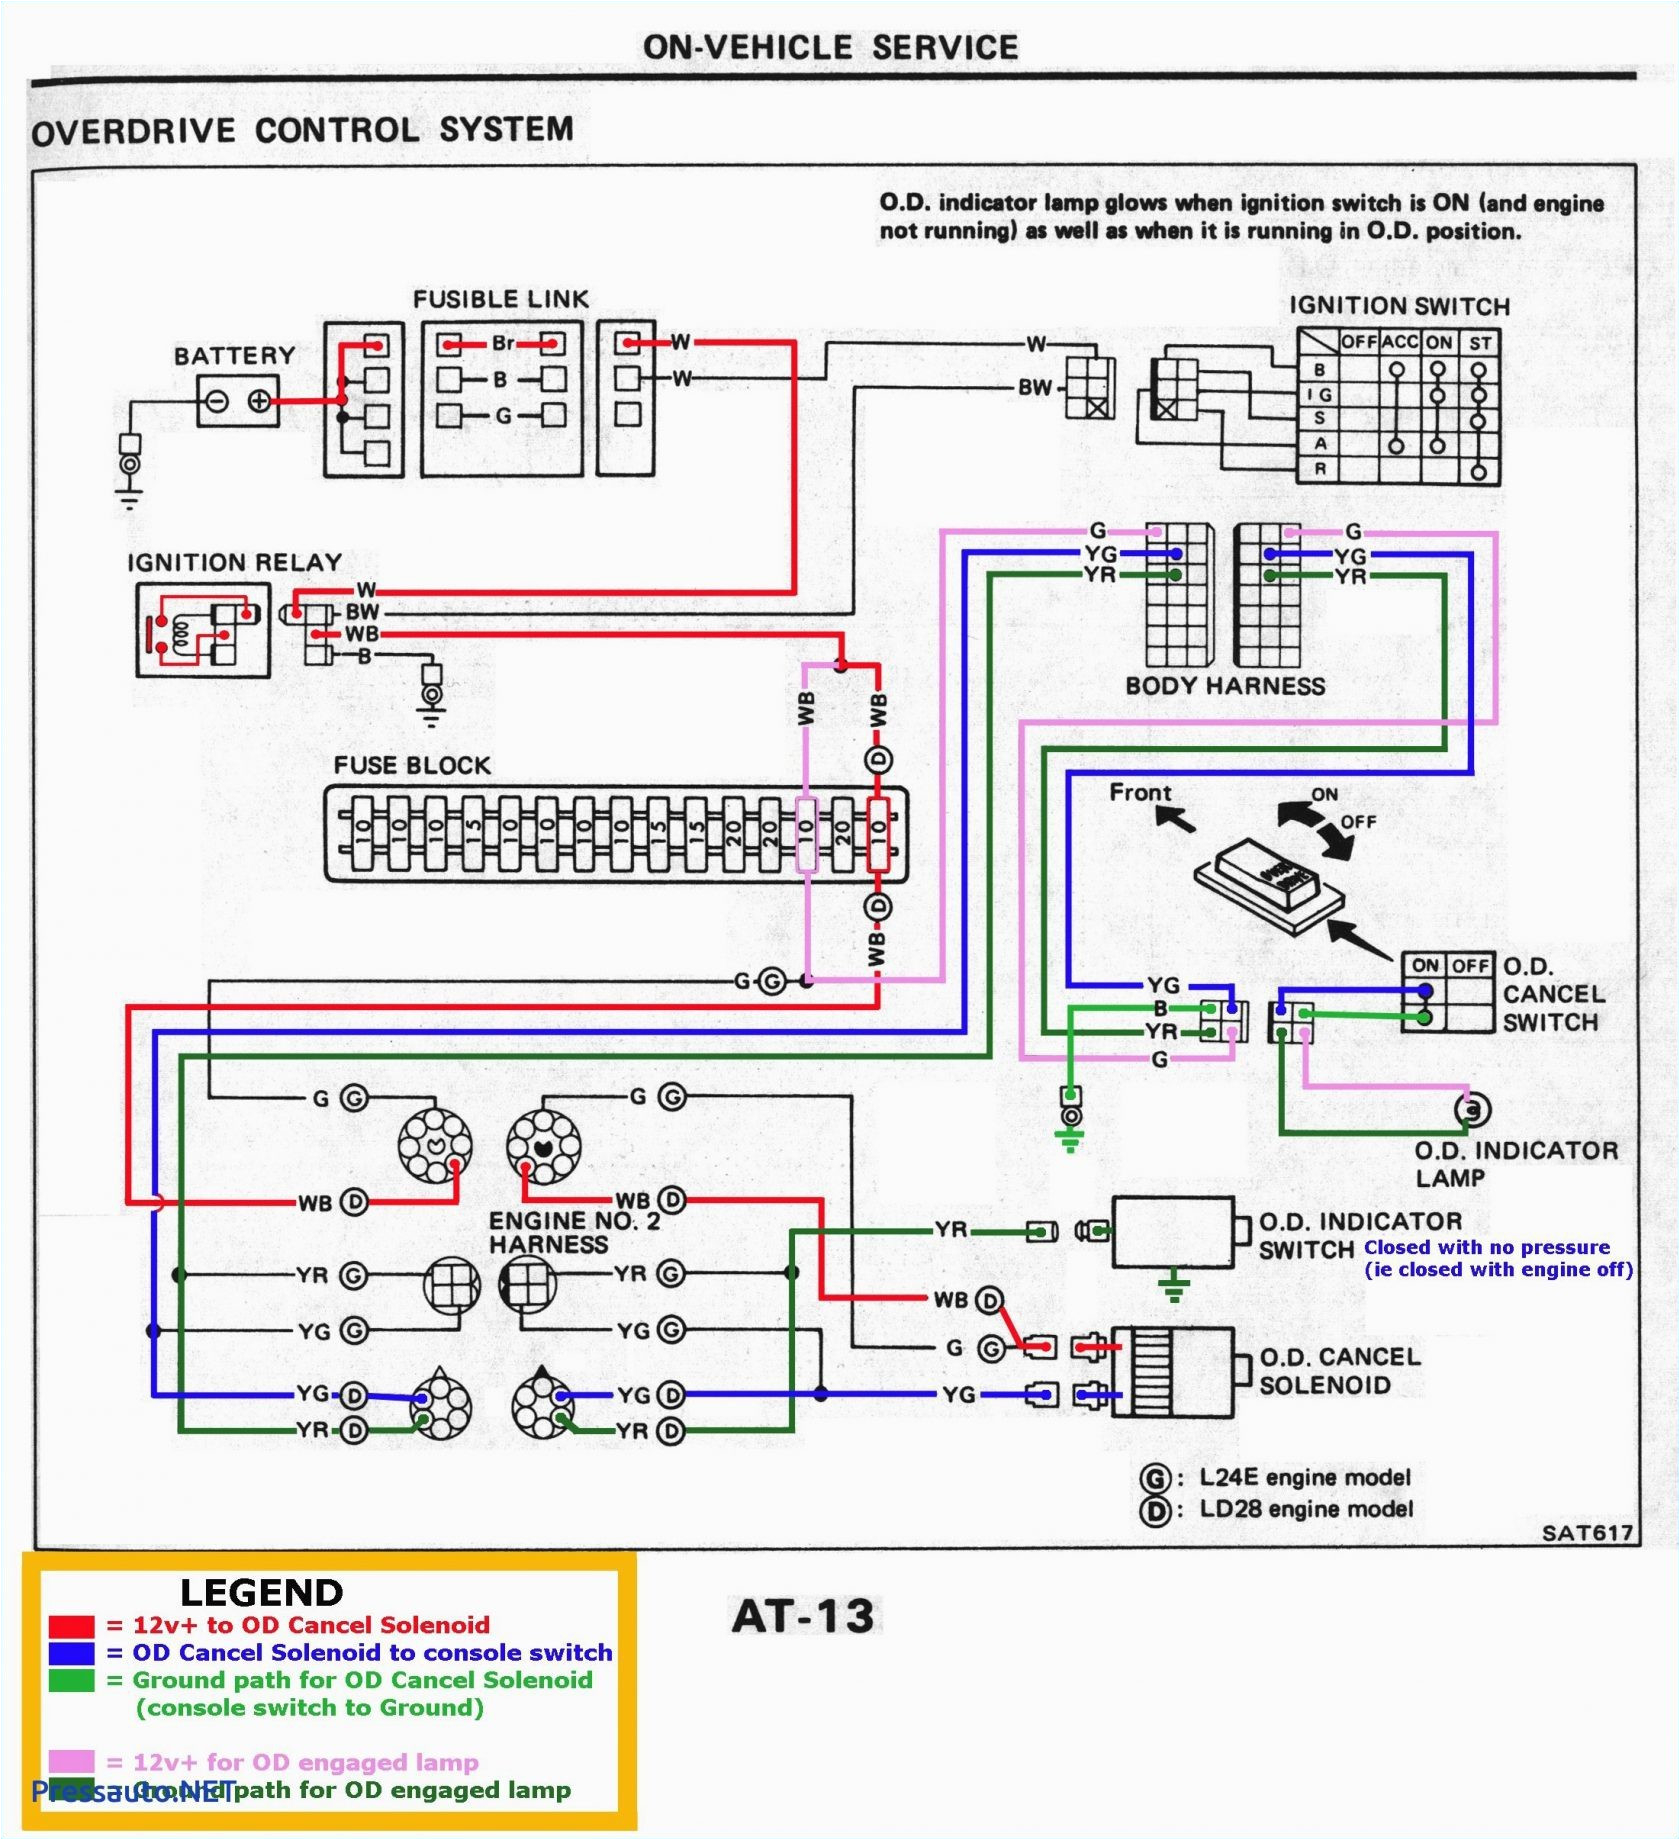 control panel wiring diagram pdf wiring diagram meta panel wiring diagram pdf control wiring diagram pdf